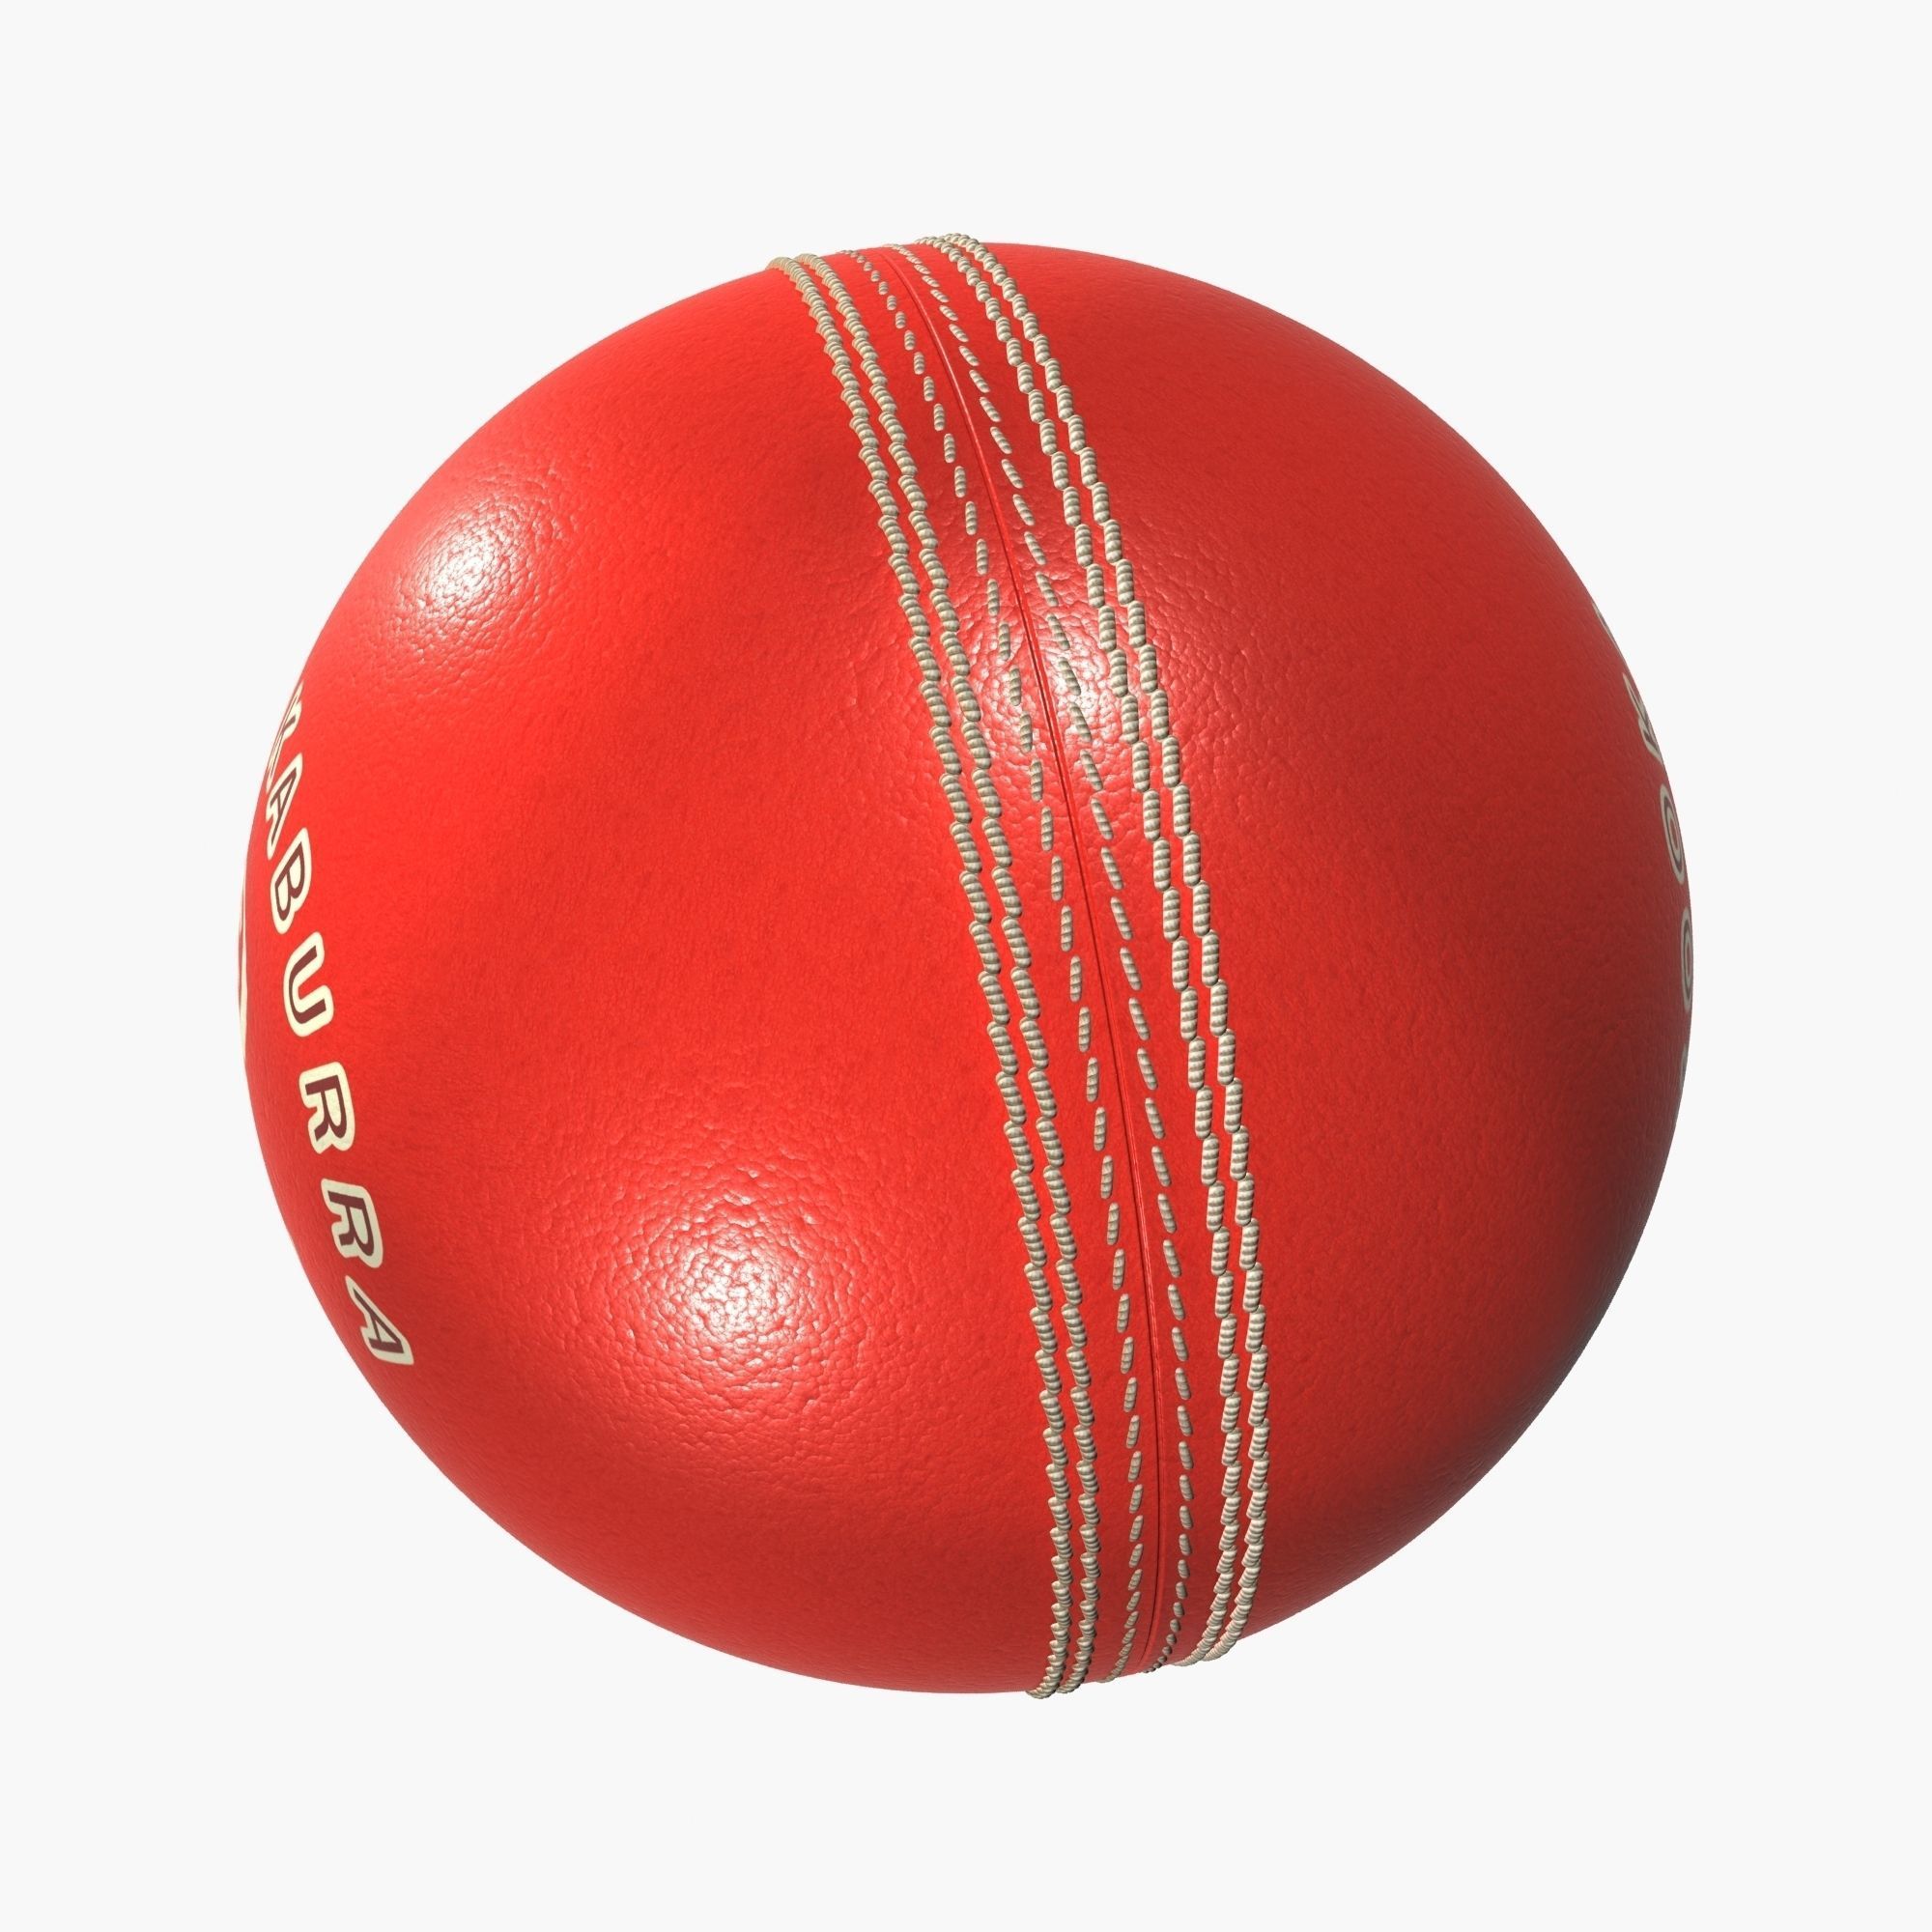 Kookaburra Cricket Ball 3D model | CGTrader